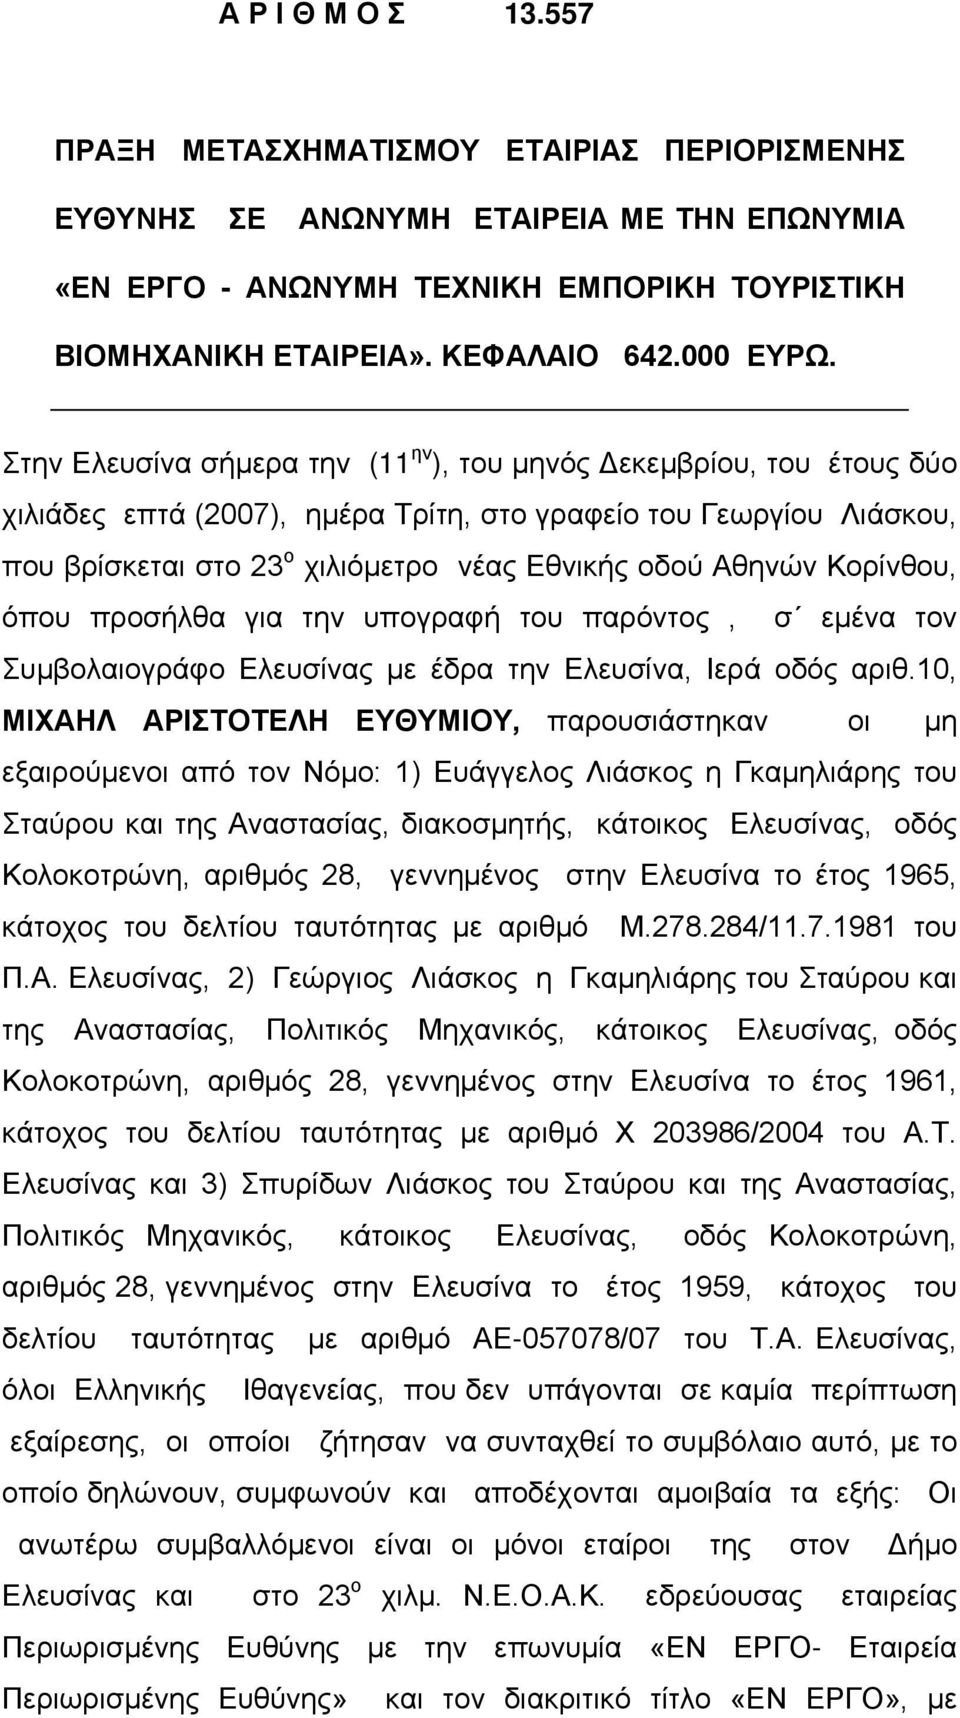 Στην Ελευσίνα σήμερα την (11 ην ), του μηνός Δεκεμβρίου, του έτους δύο χιλιάδες επτά (2007), ημέρα Τρίτη, στο γραφείο του Γεωργίου Λιάσκου, που βρίσκεται στο 23 ο χιλιόμετρο νέας Εθνικής οδού Αθηνών